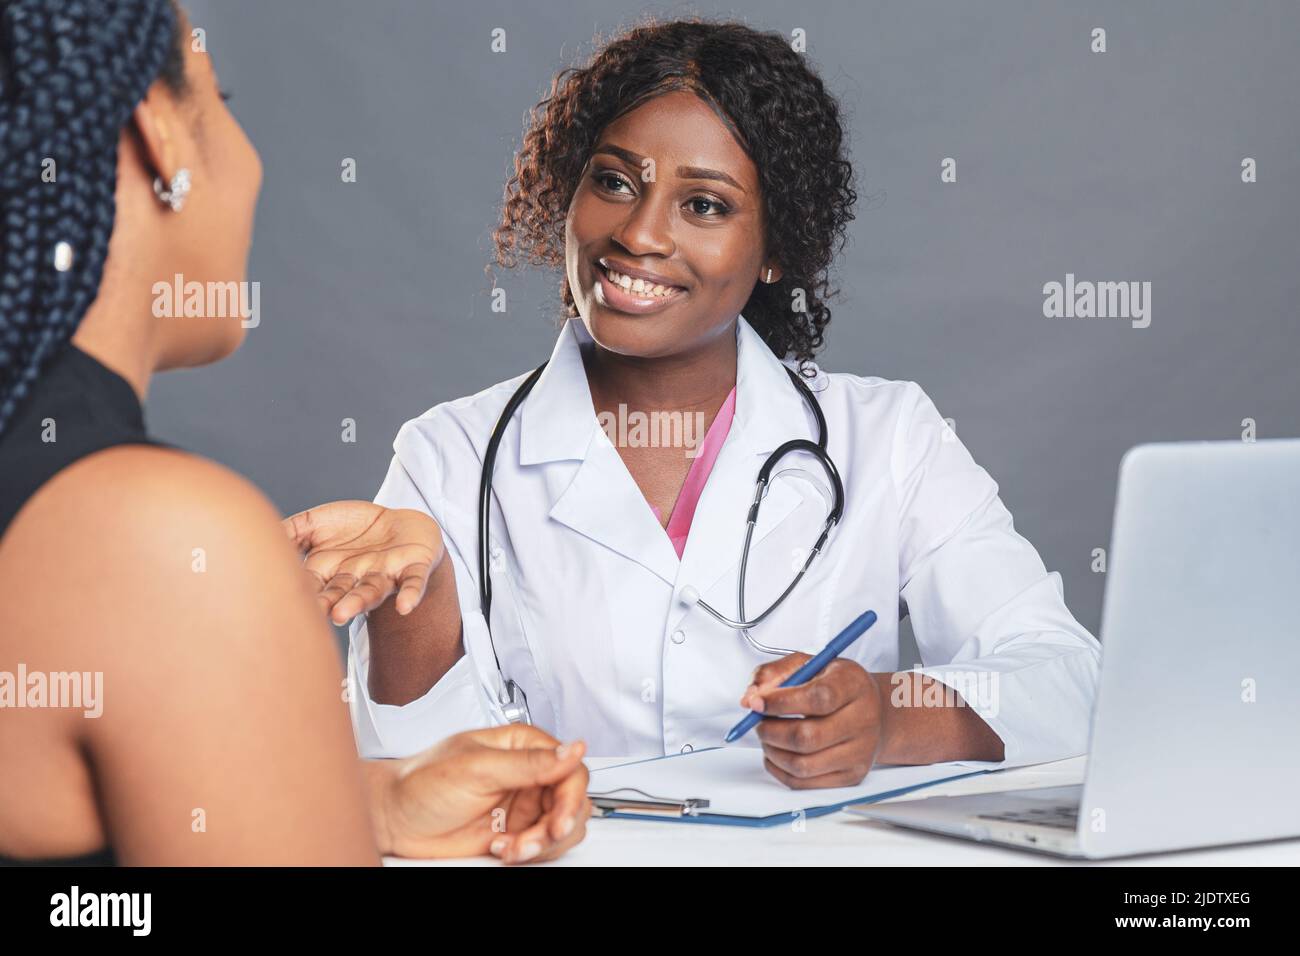 Femme afro-américaine médecin en cabinet médical avec un patient tout en portant un masque de protection pendant un rendez-vous médical Banque D'Images